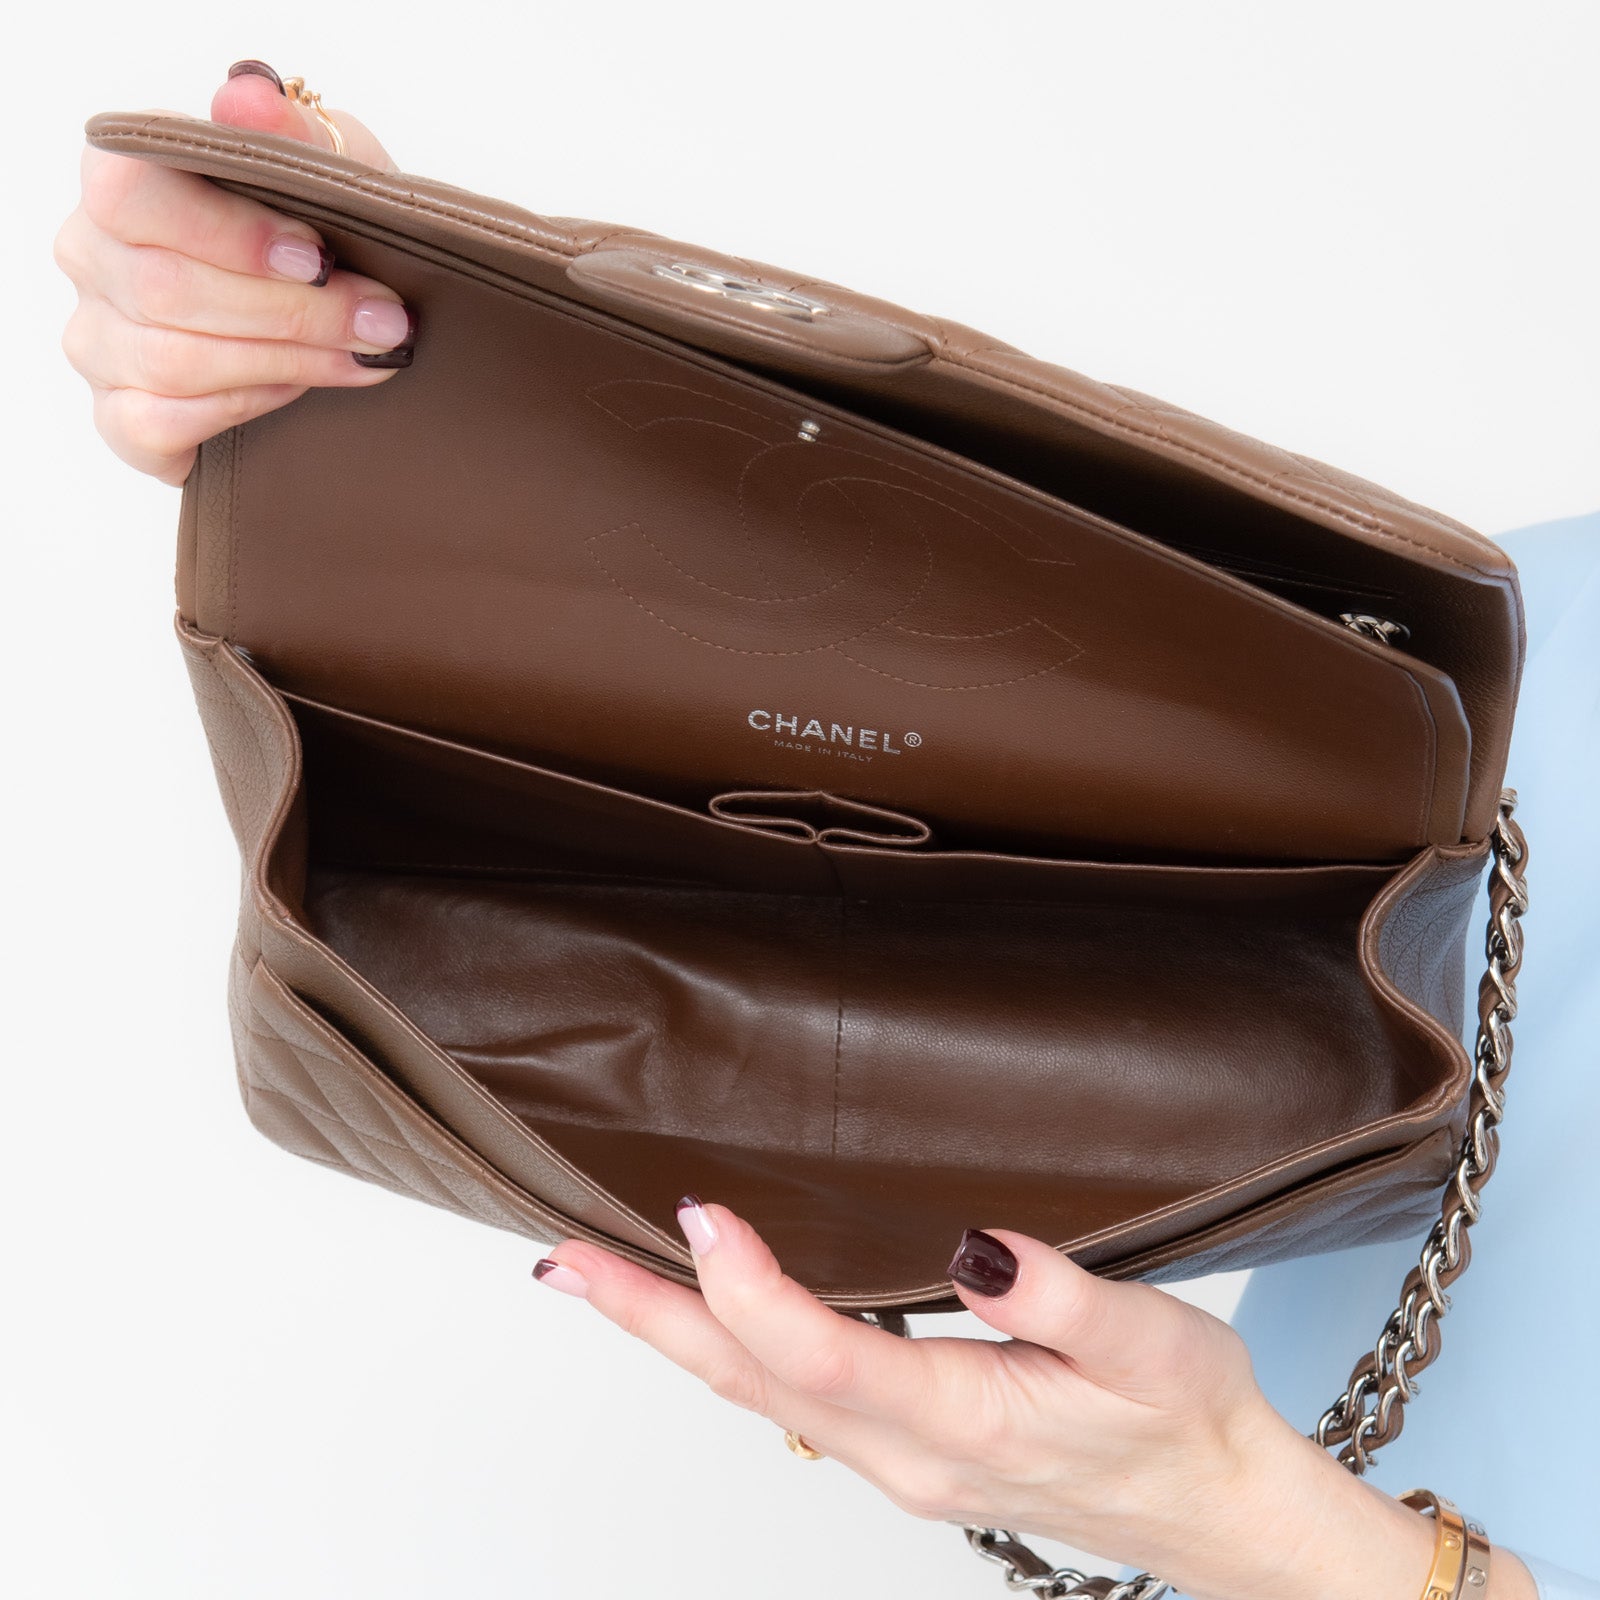 Chanel Brown Double Flap Jumbo Bag - Image 12 of 15